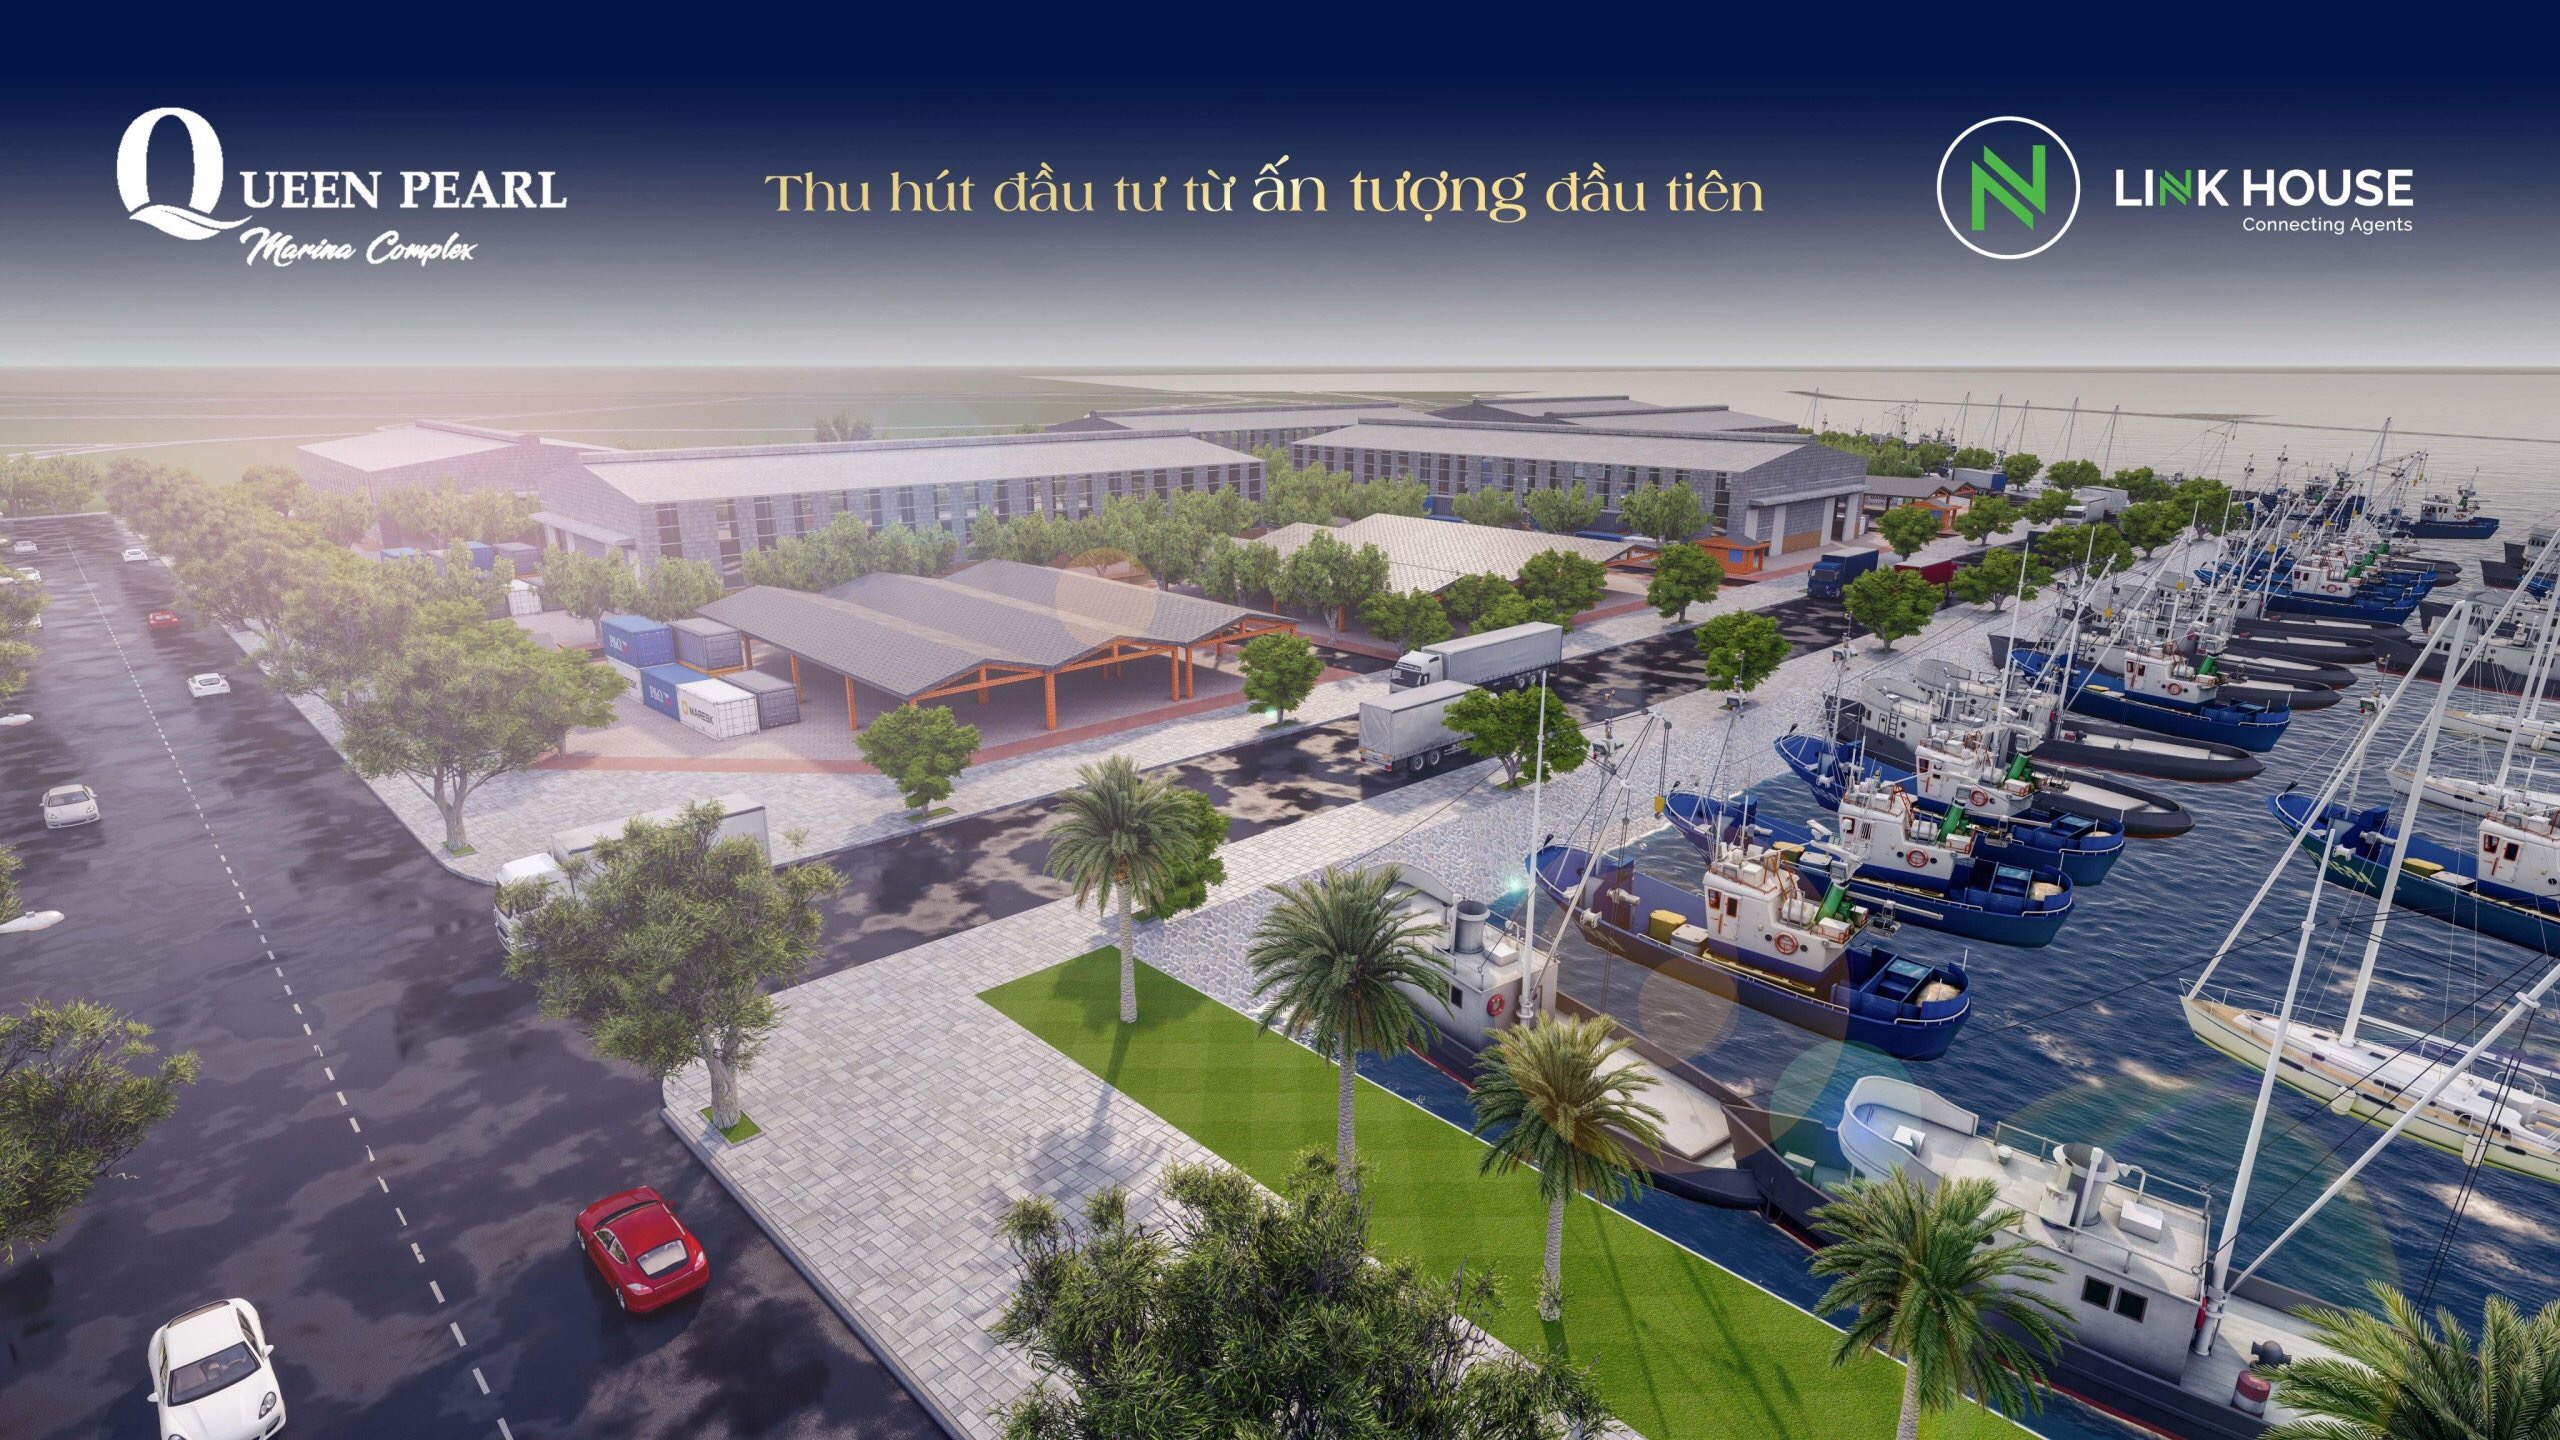 Đón cơ hội với khu đô thị lấn biển Queen Pearl Marina Complex tại Bình Thuận